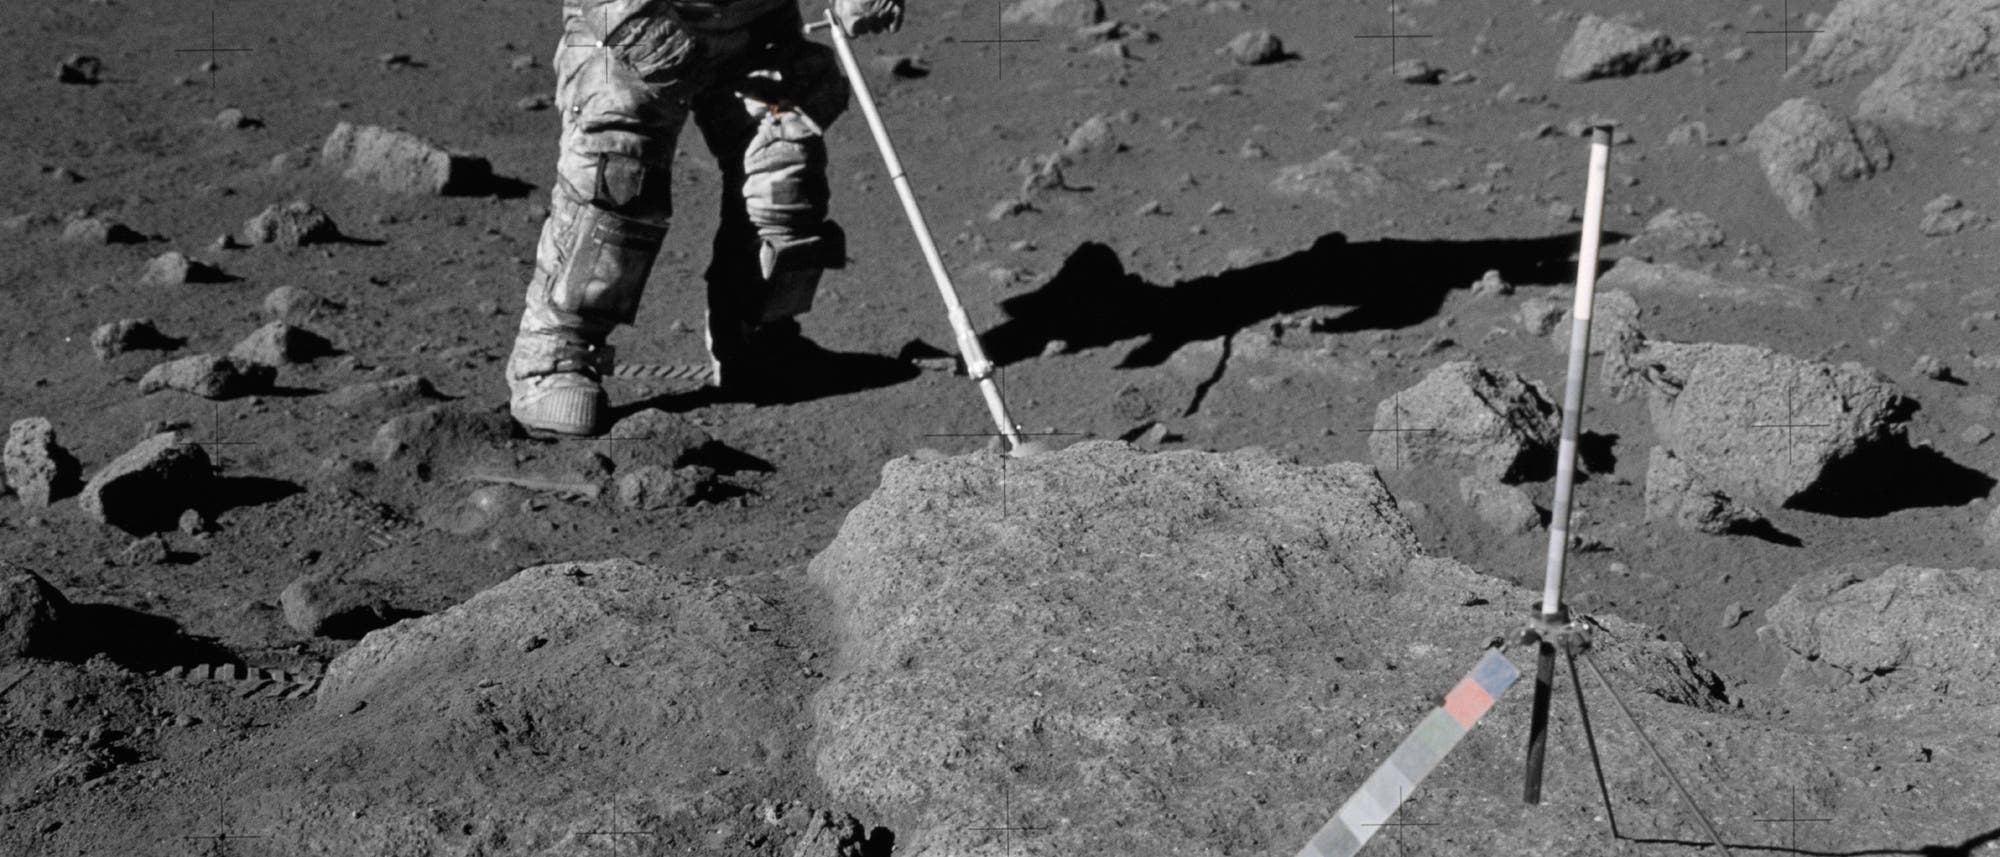 Der Geologe Harrison Schmitt war der erste Wissenschaftsastronaut der US-Raumfahrtbehörde NASA und der bislang letzte Mensch auf dem Mond. Während der Apollo-17-Mission sammelte er zahlreiche Gesteinsproben.